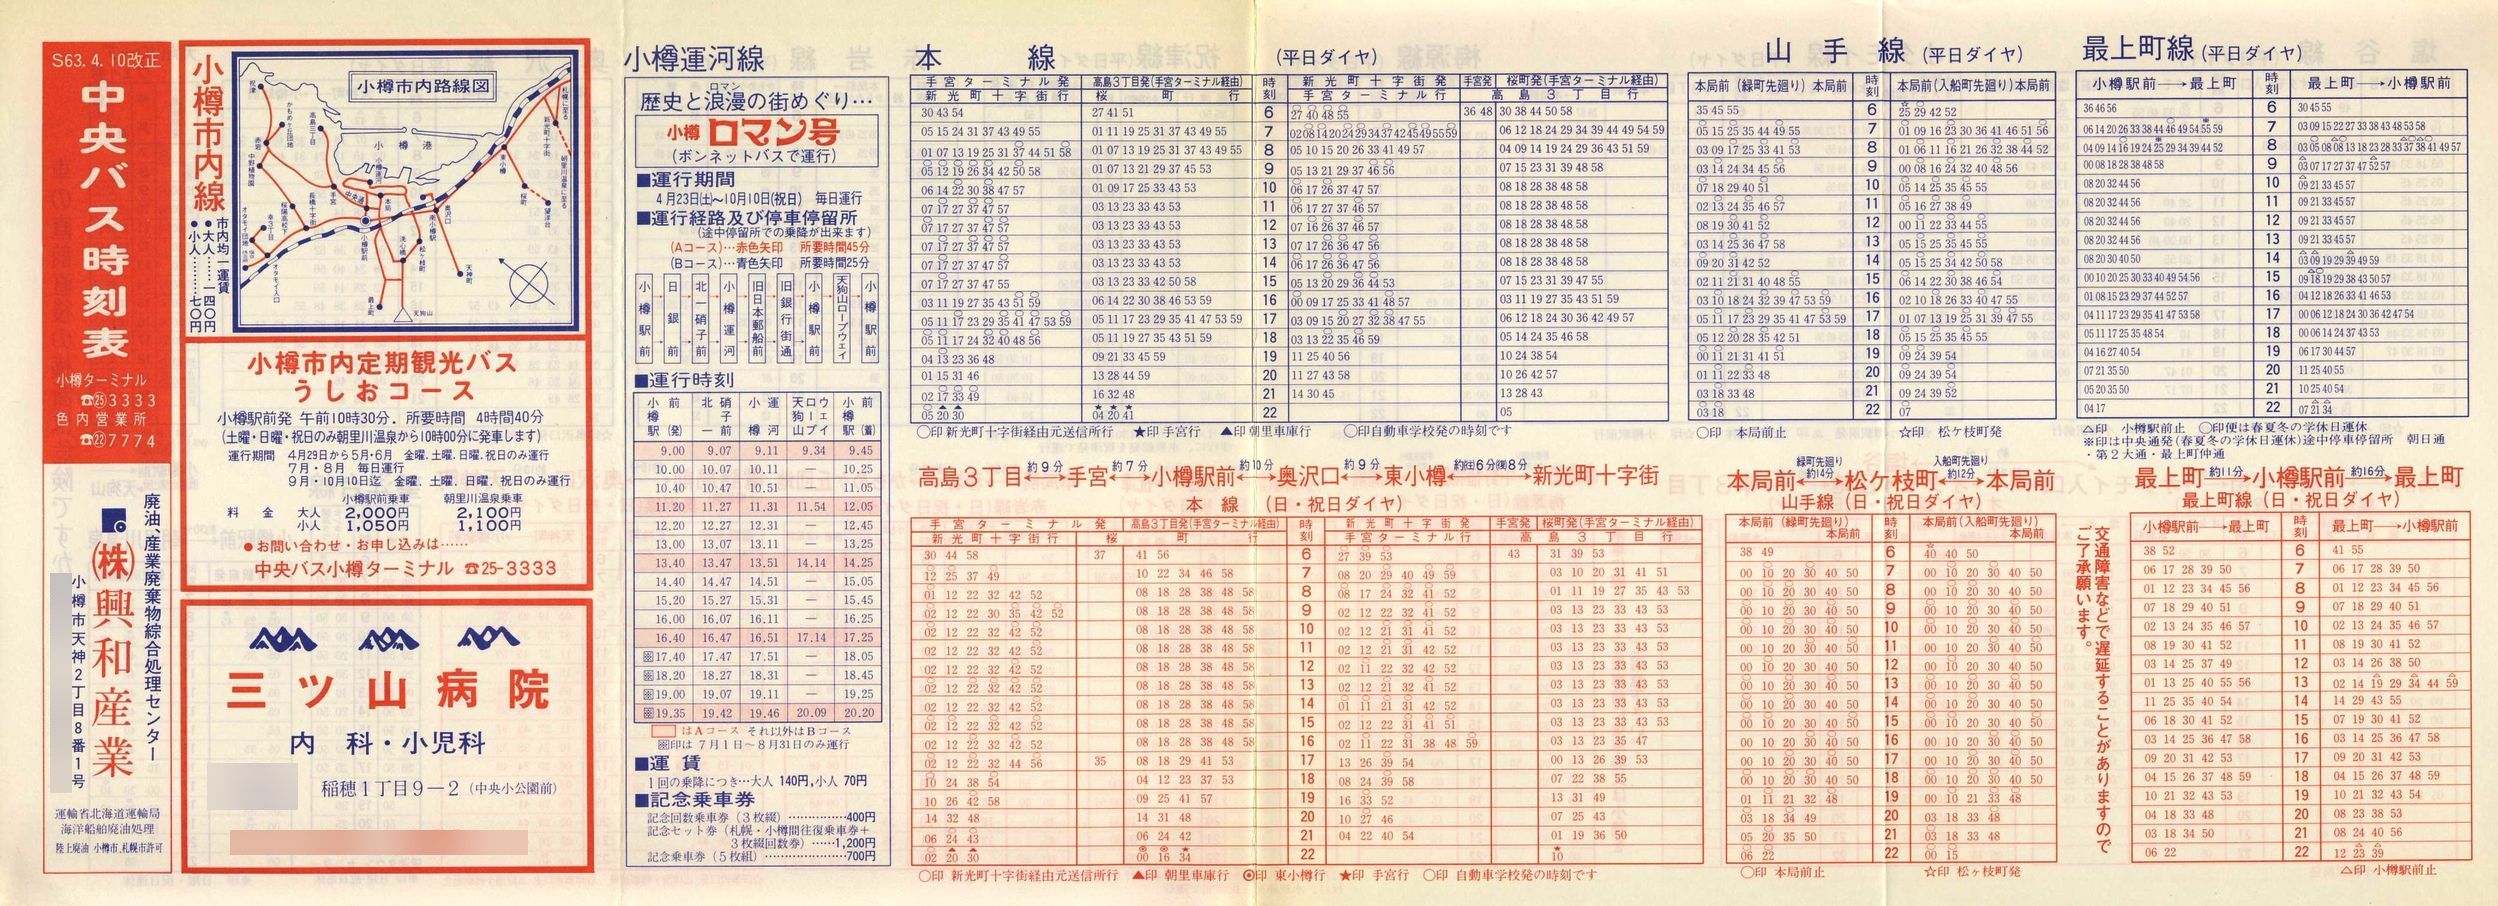 1988-04-10改正_北海道中央バス(小樽)_小樽市内線時刻表表面